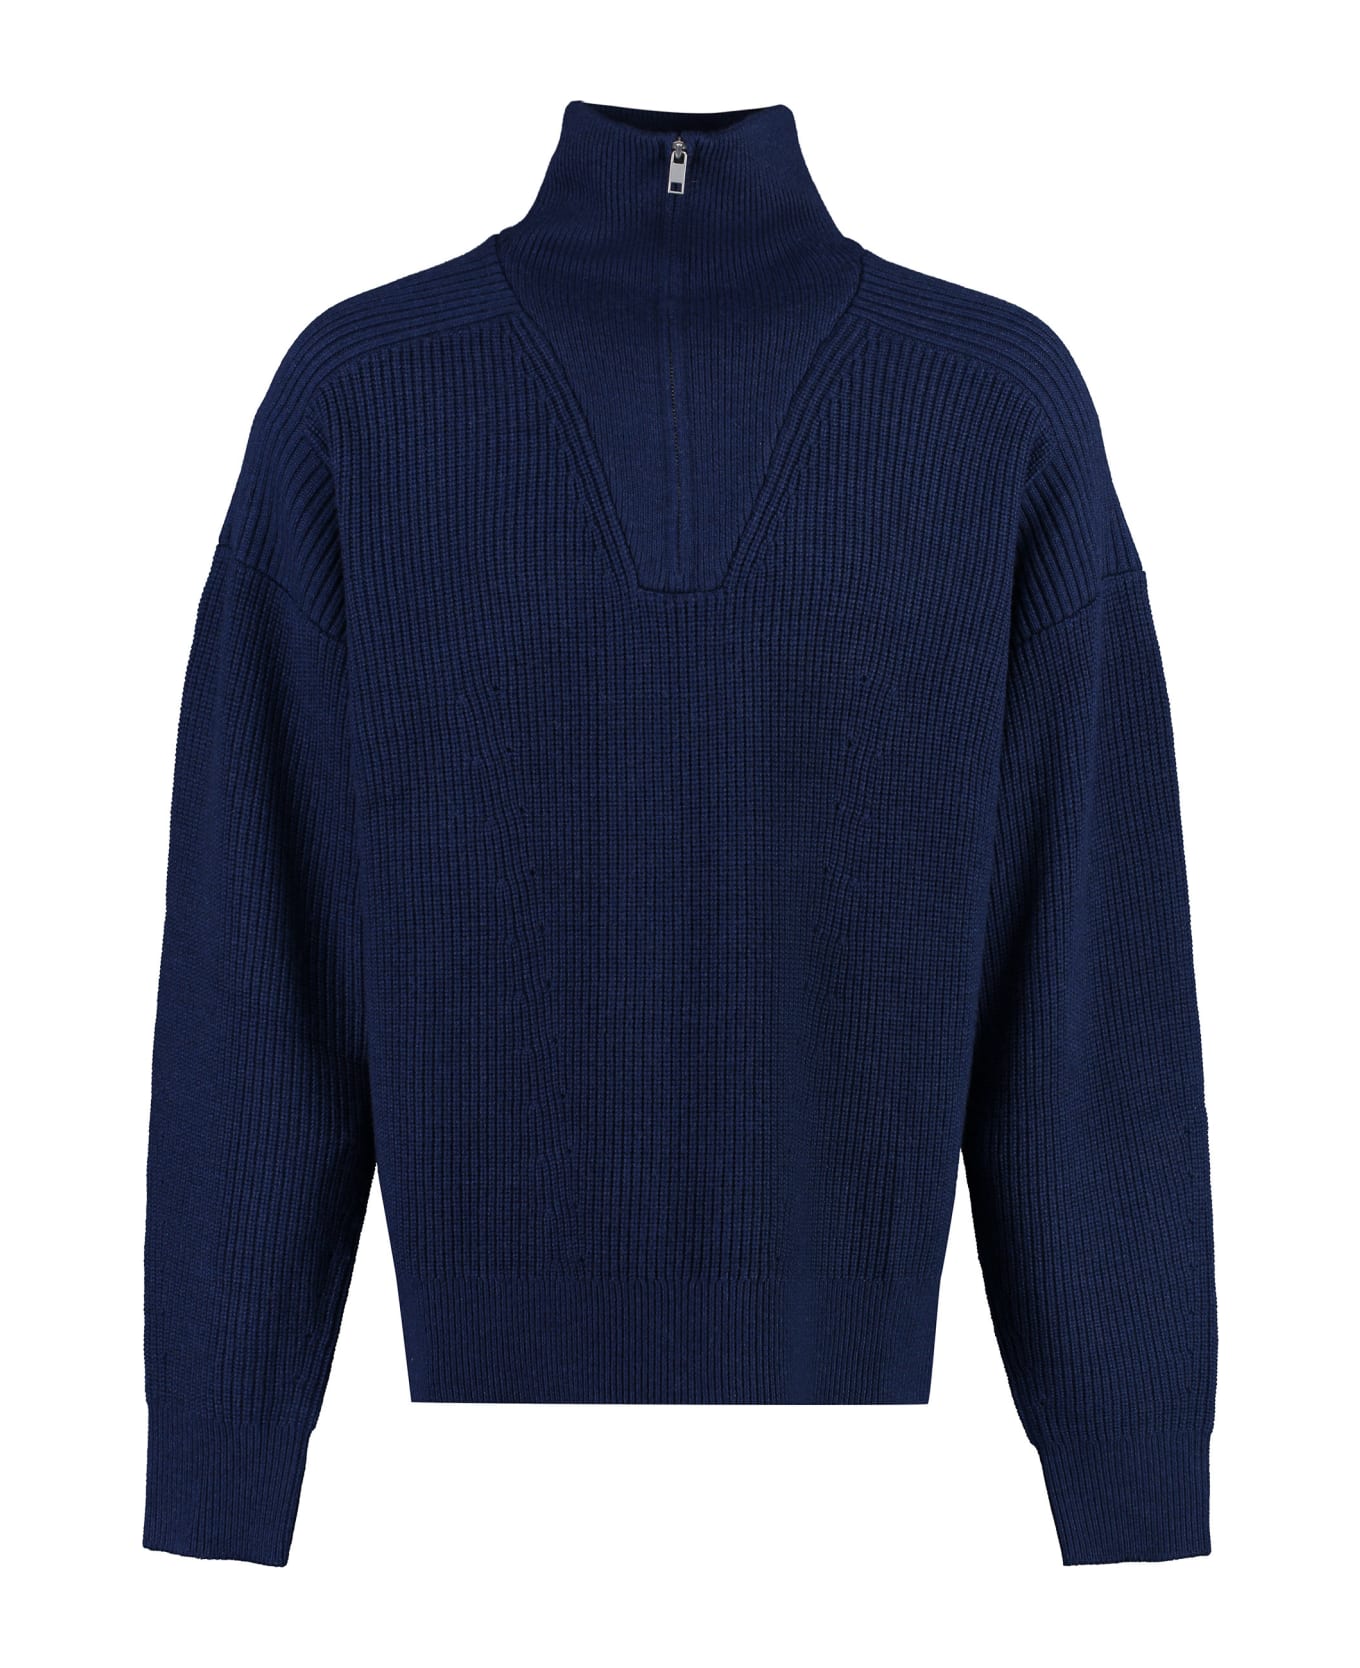 Isabel Marant Benny Turtleneck Wool Pullover - blue